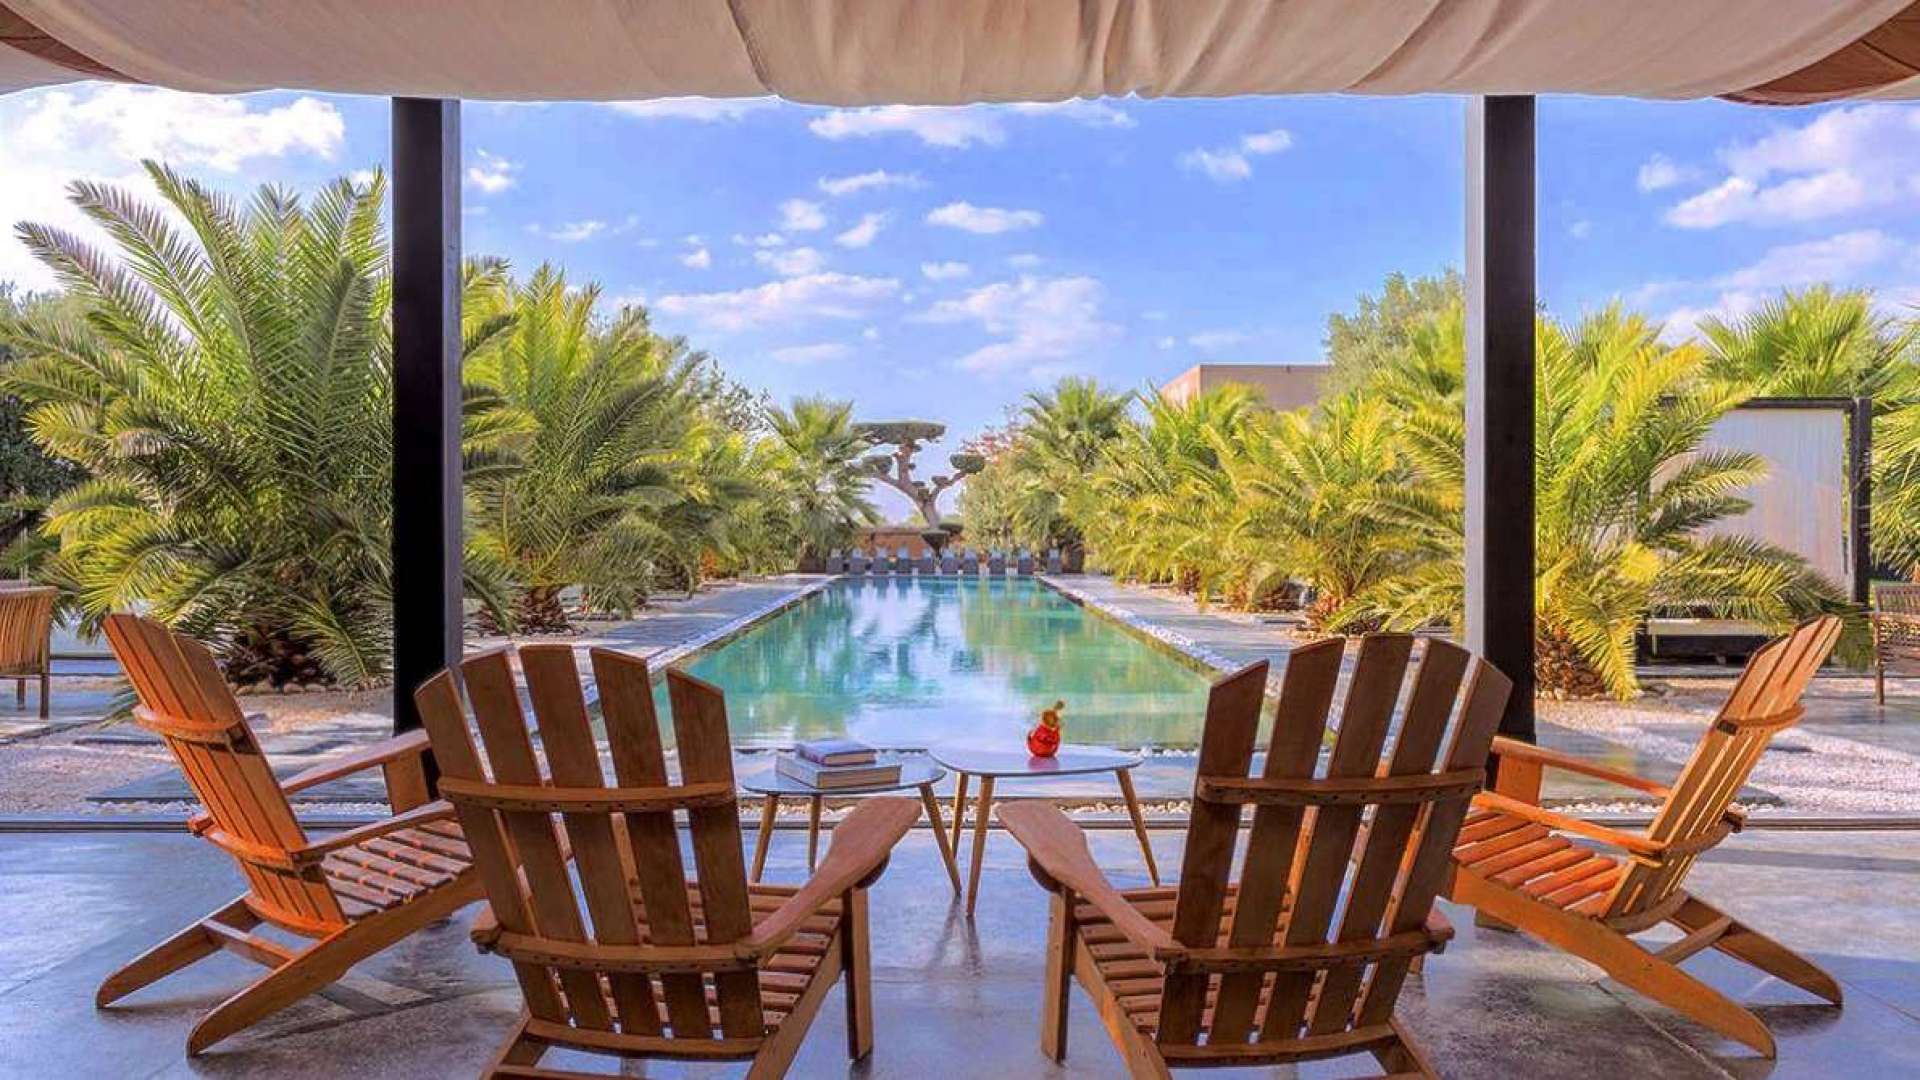 Location de vacances,Villa,Villa 19 chambres avec piscine privée pour mariages et événements ,Marrakech,Route Amizmiz